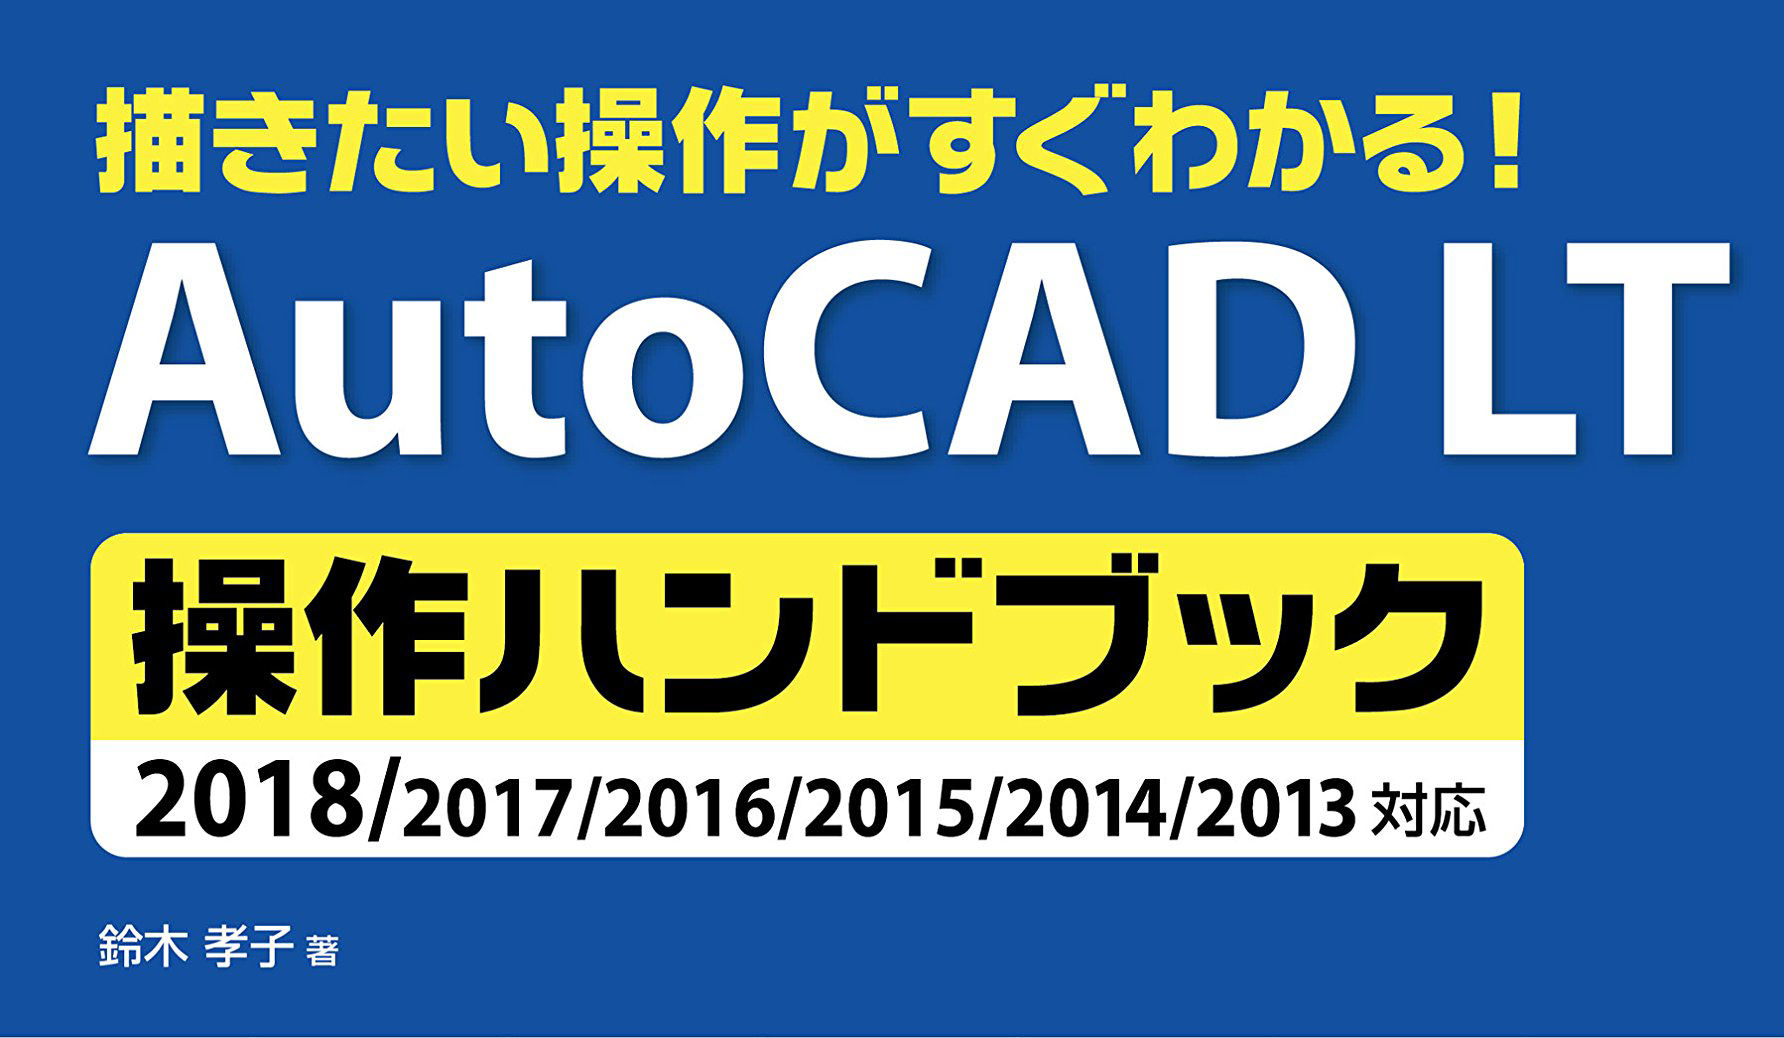 Autocad Ltの決定版ハンドブック 3dp Id Arts